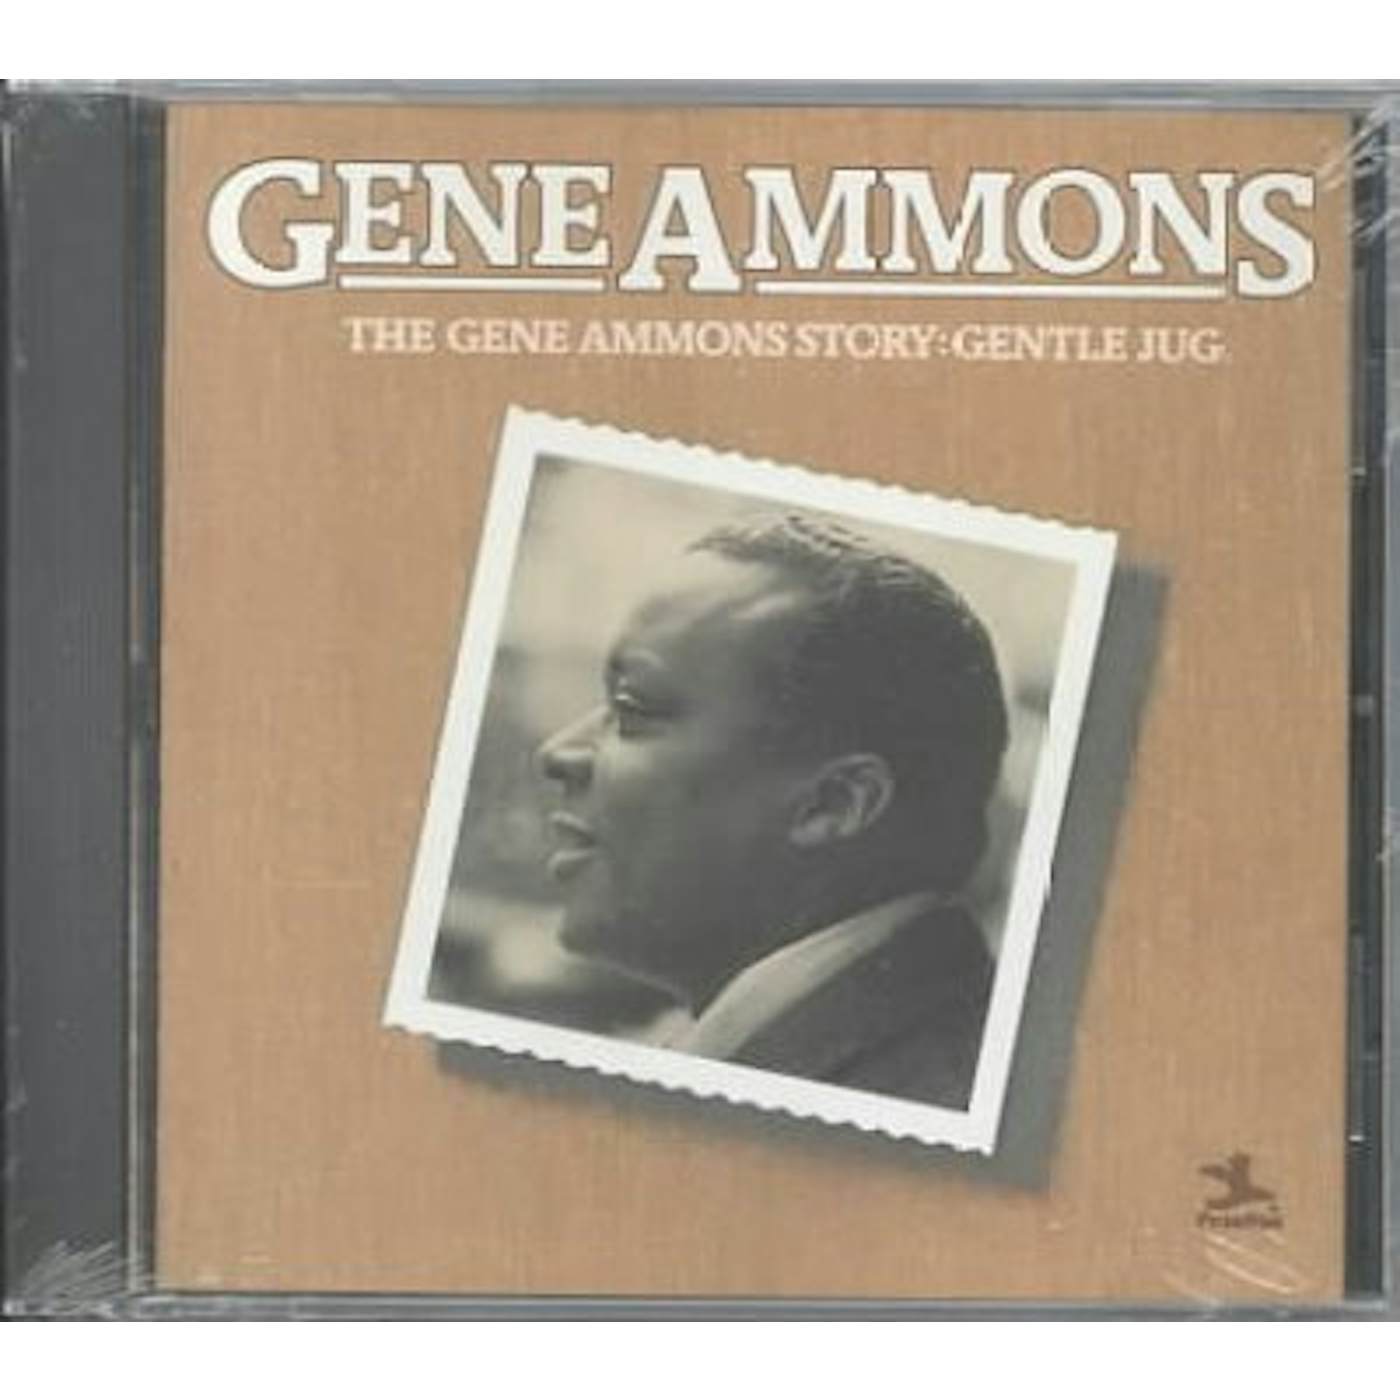 Gene Ammons Story: Gentle Jug CD